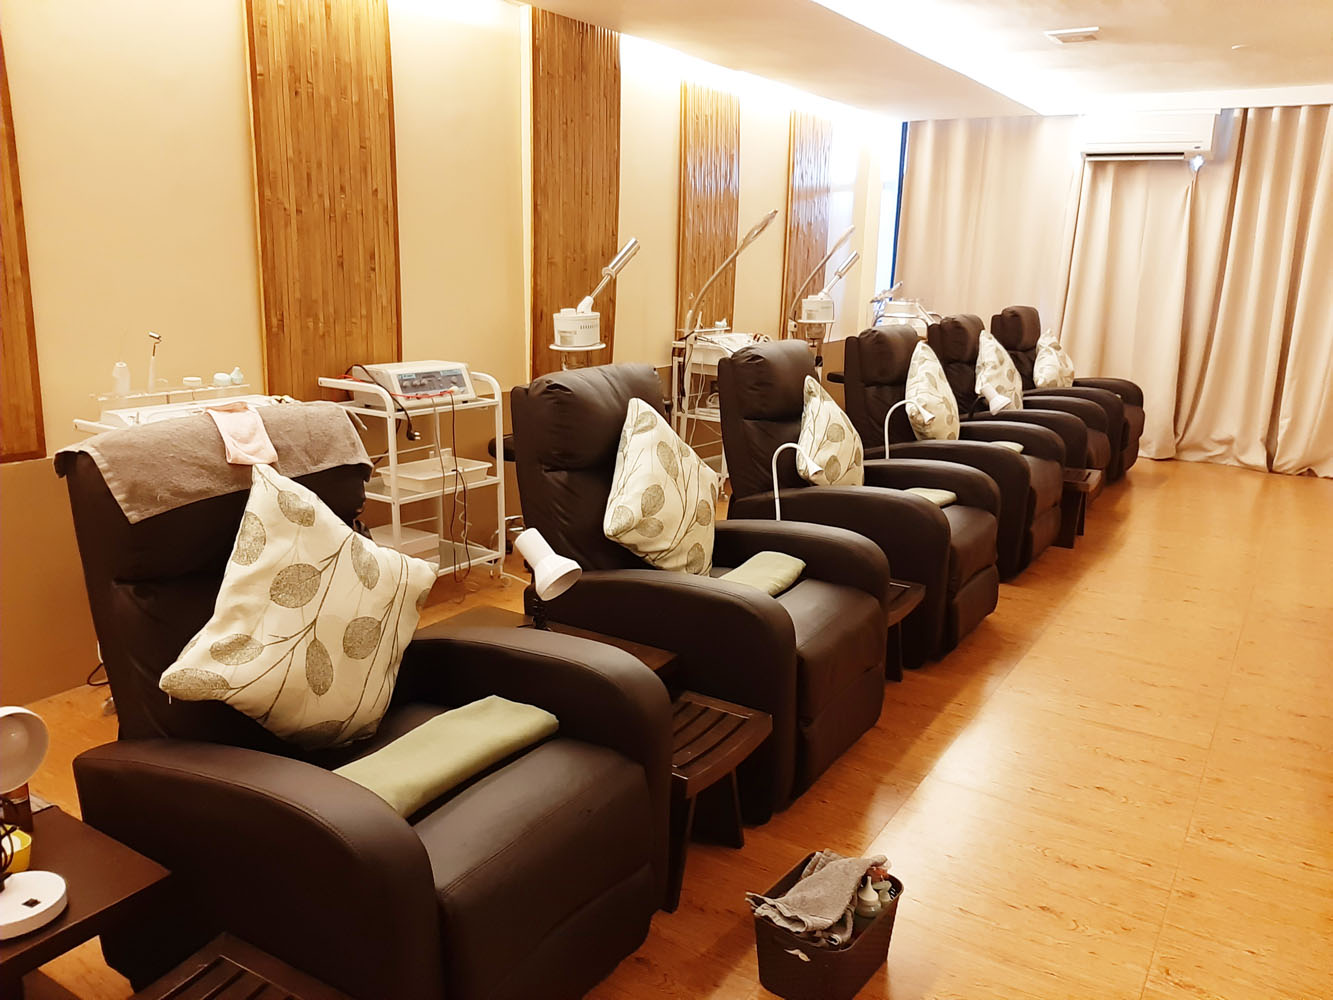 Spa Olivenza Iloilo massage chairs in facial room.